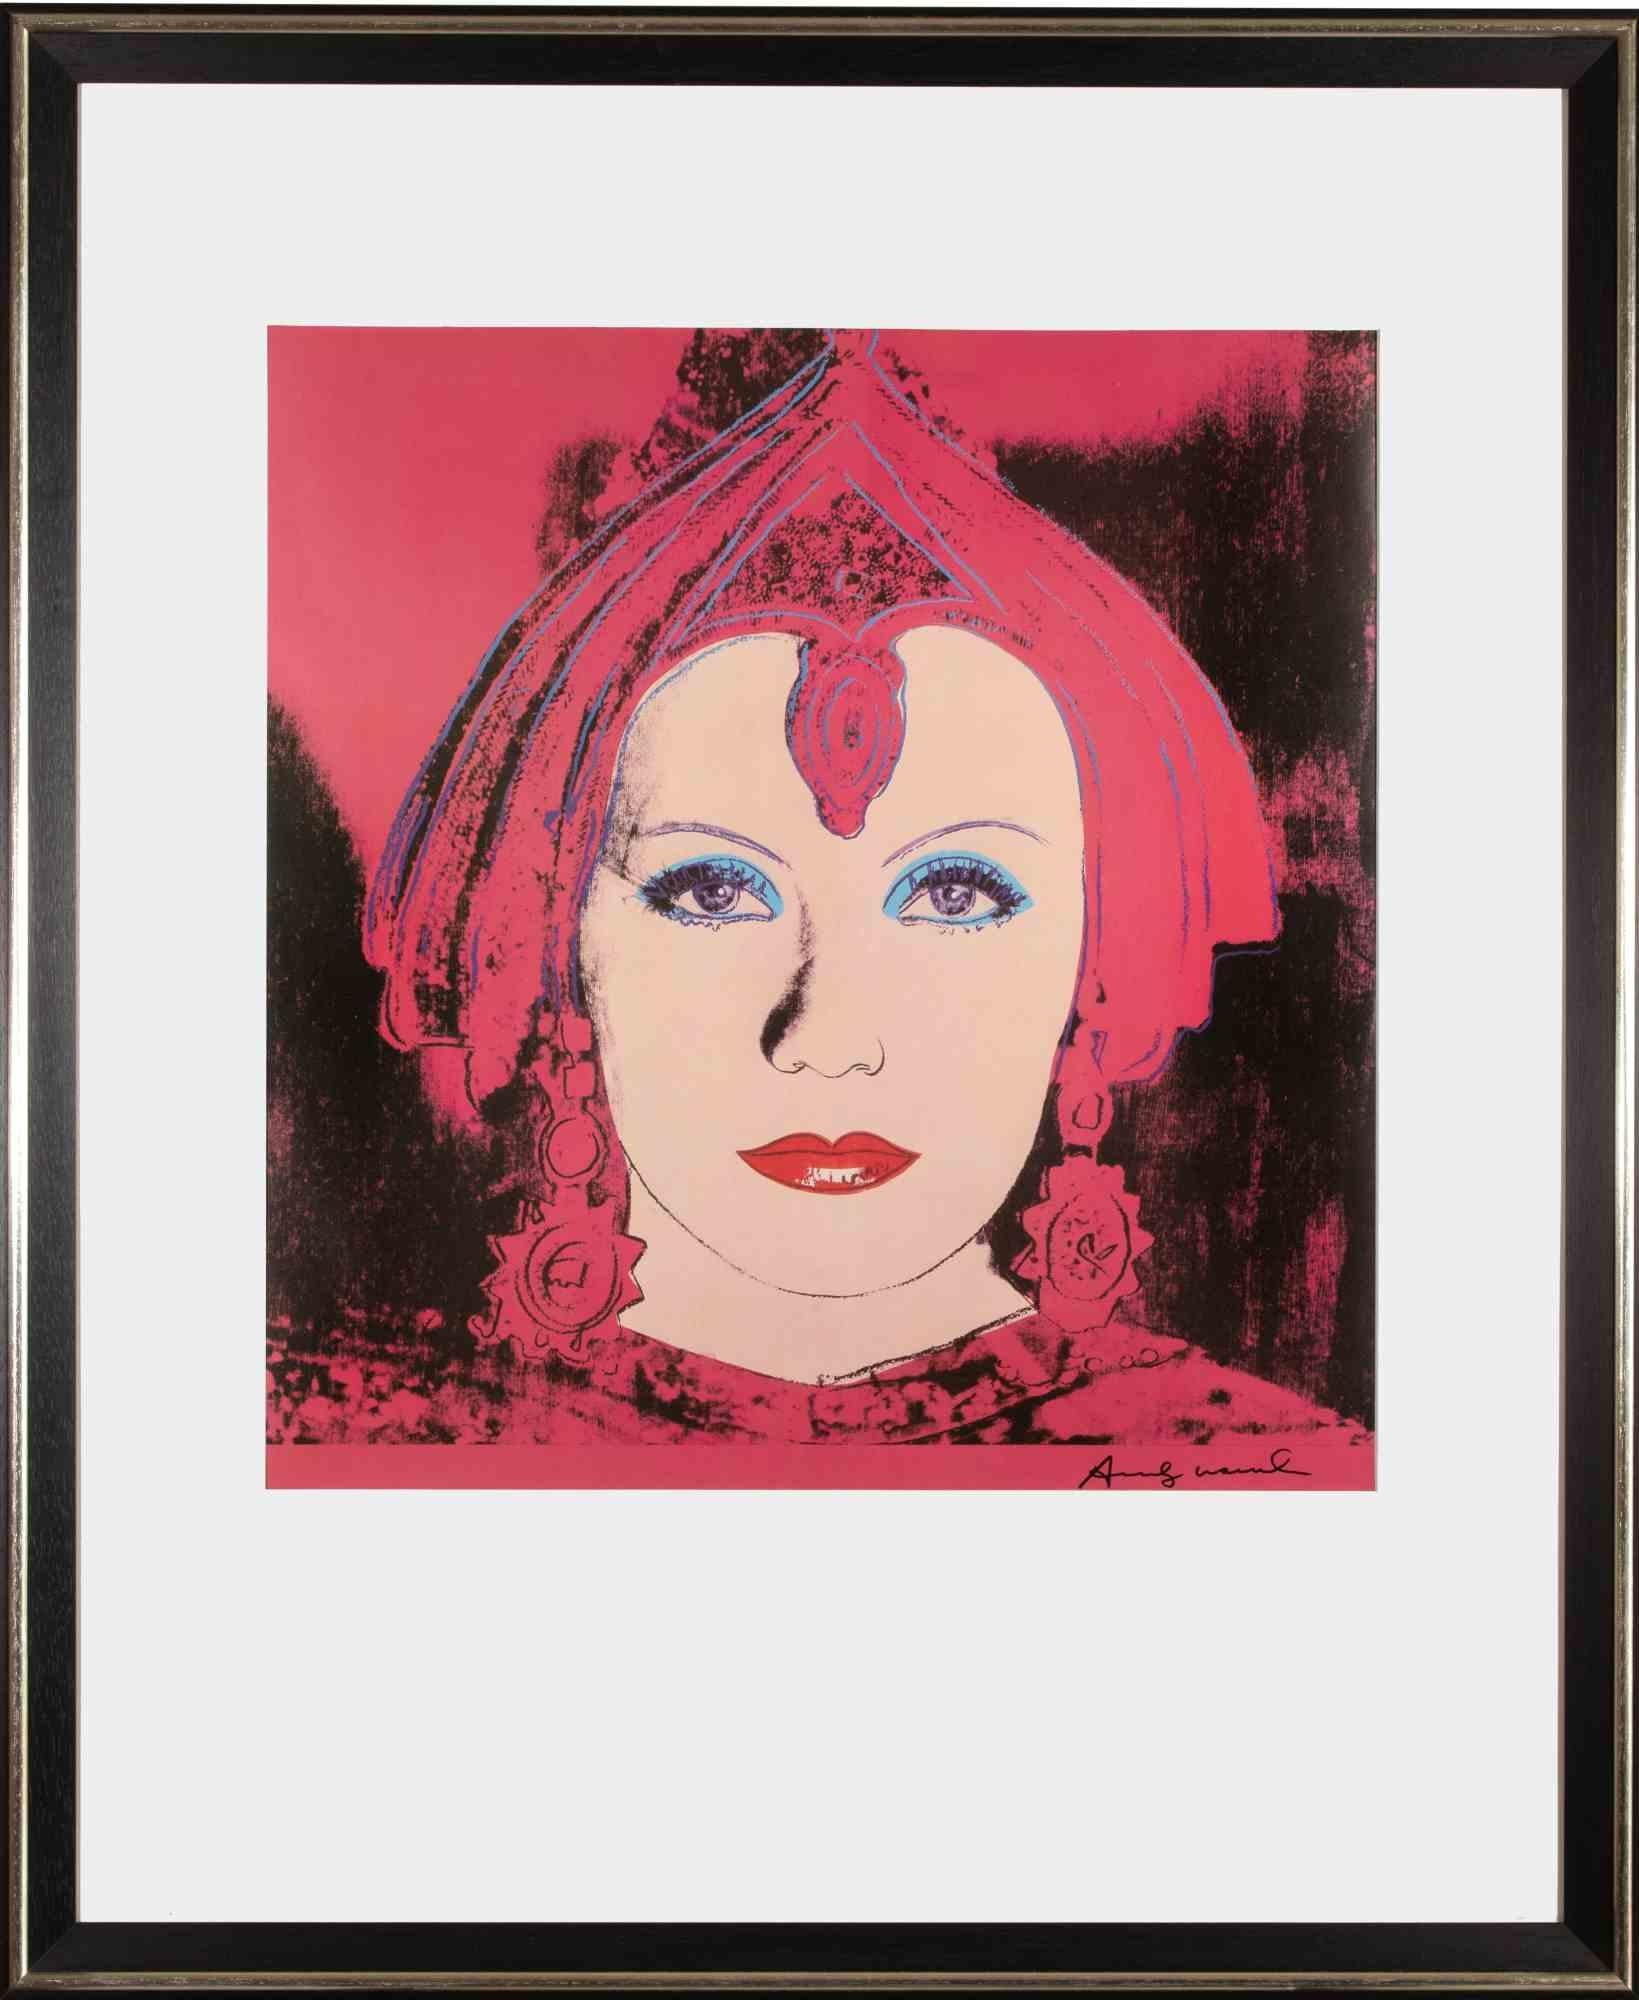 Greta Garbo als Mata Hari ist ein zeitgenössisches Kunstwerk von Andy Warhol aus dem Jahr 1981.

Offsetdruck und Farblithographie.

Inklusive Rahmen: 104,5 x 86 x 3 cm.

Rechts unten handsigniert.

Referenz Feldman-Schellmann II B.